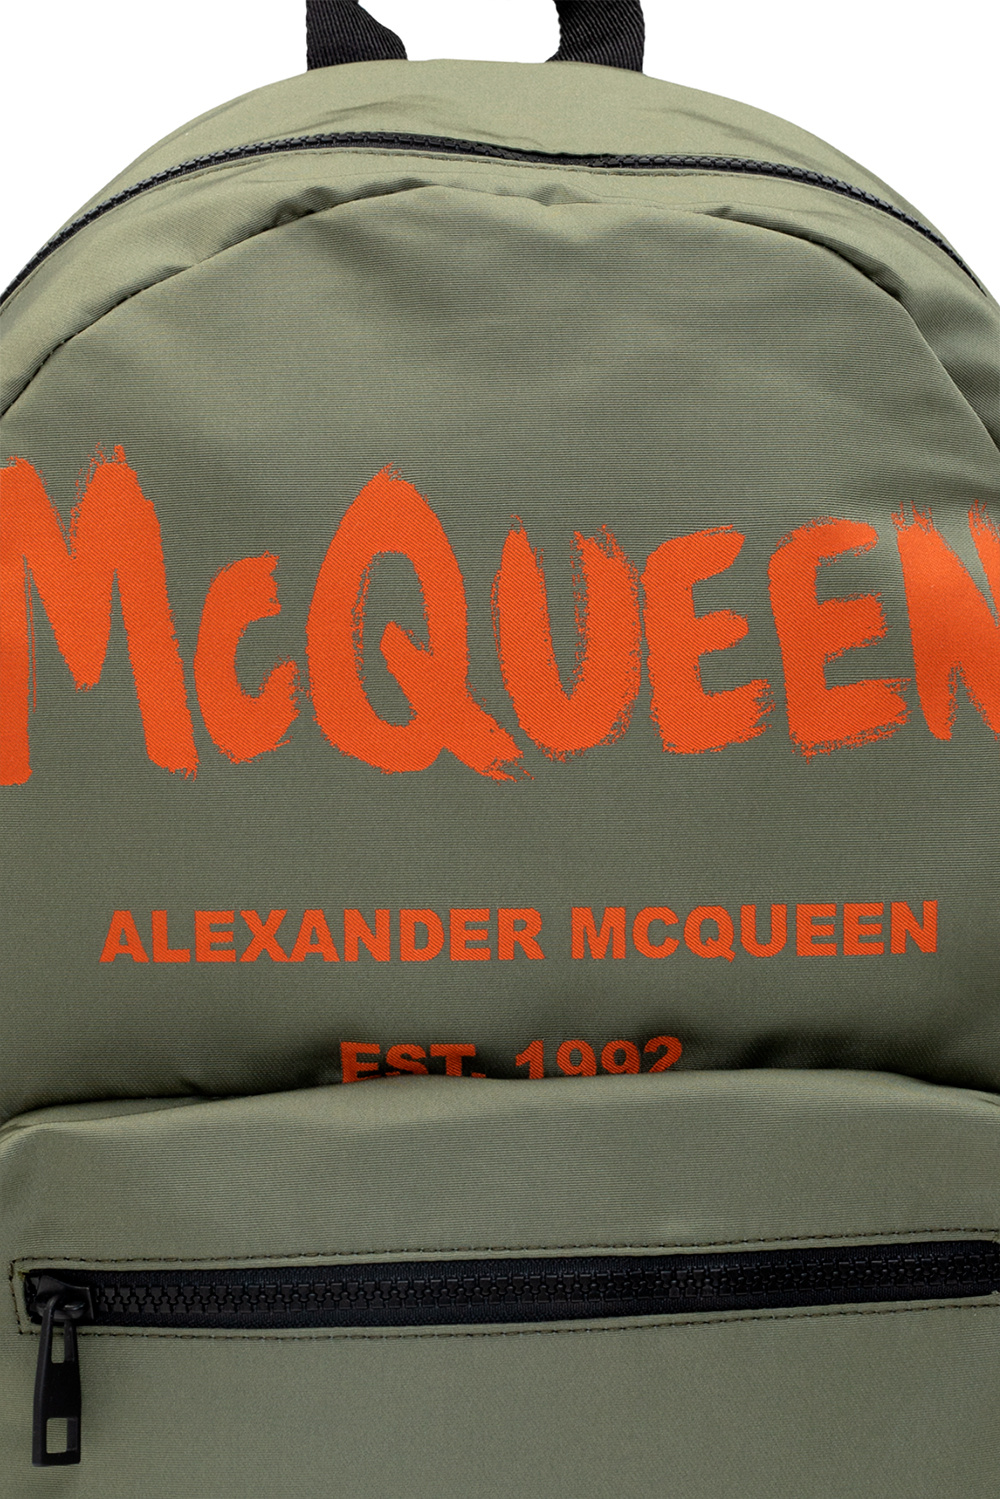 Alexander McQueen Alexander McQueen Skull Charm Leather Double-wrap Bracelet